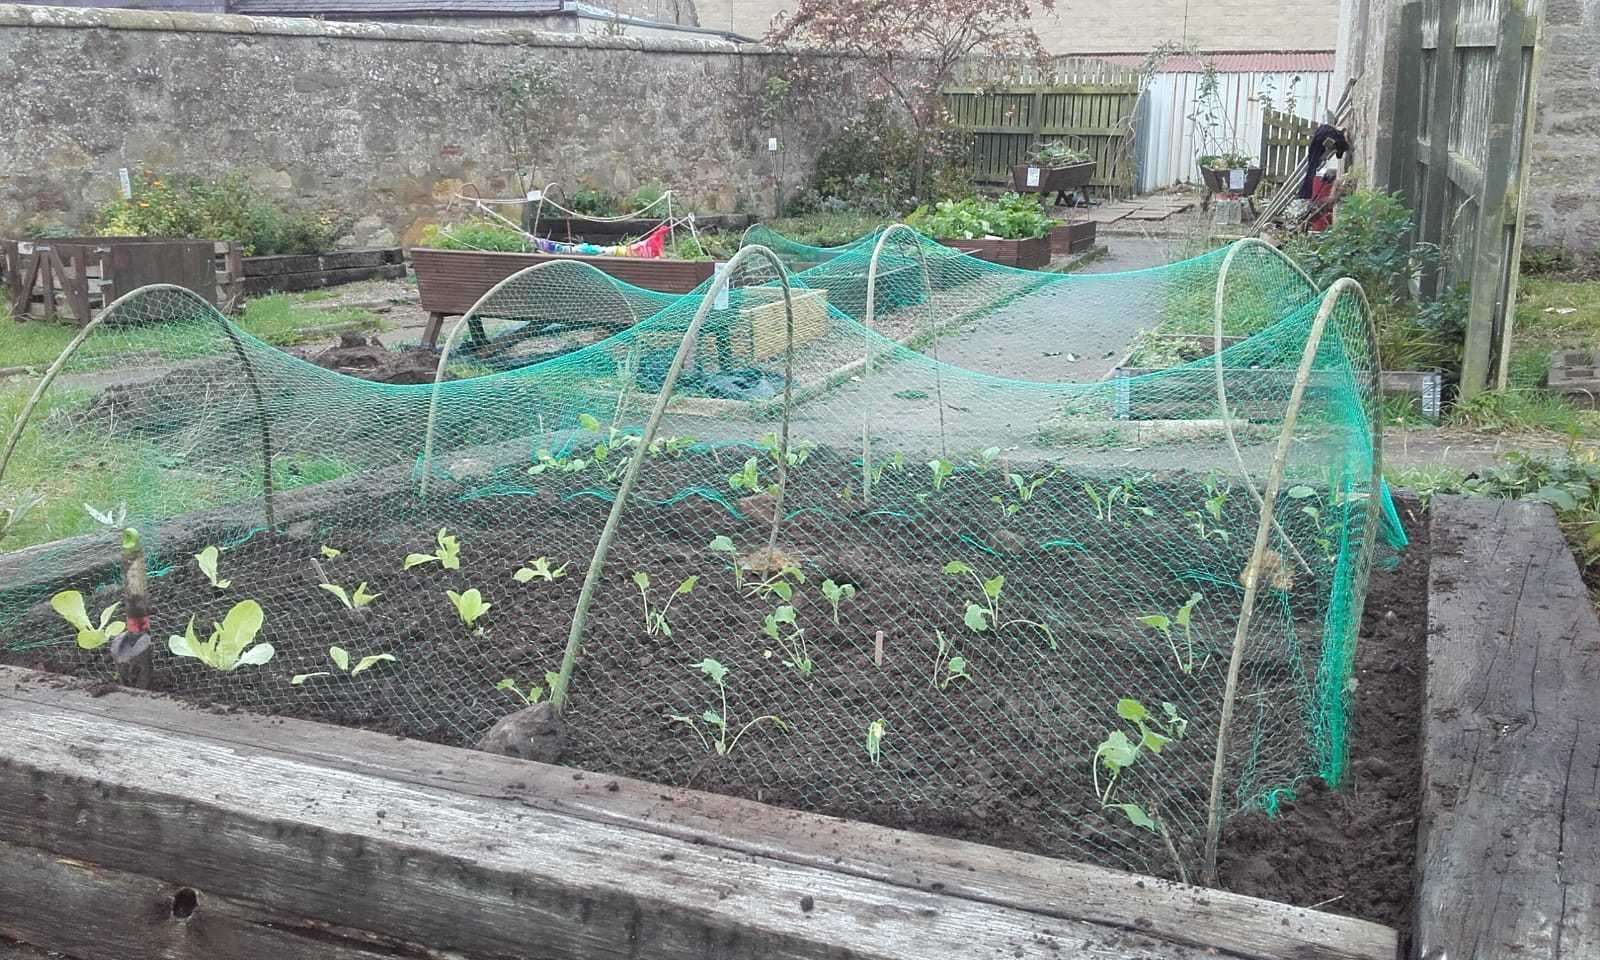 The community garden is taking shape in New Elgin.